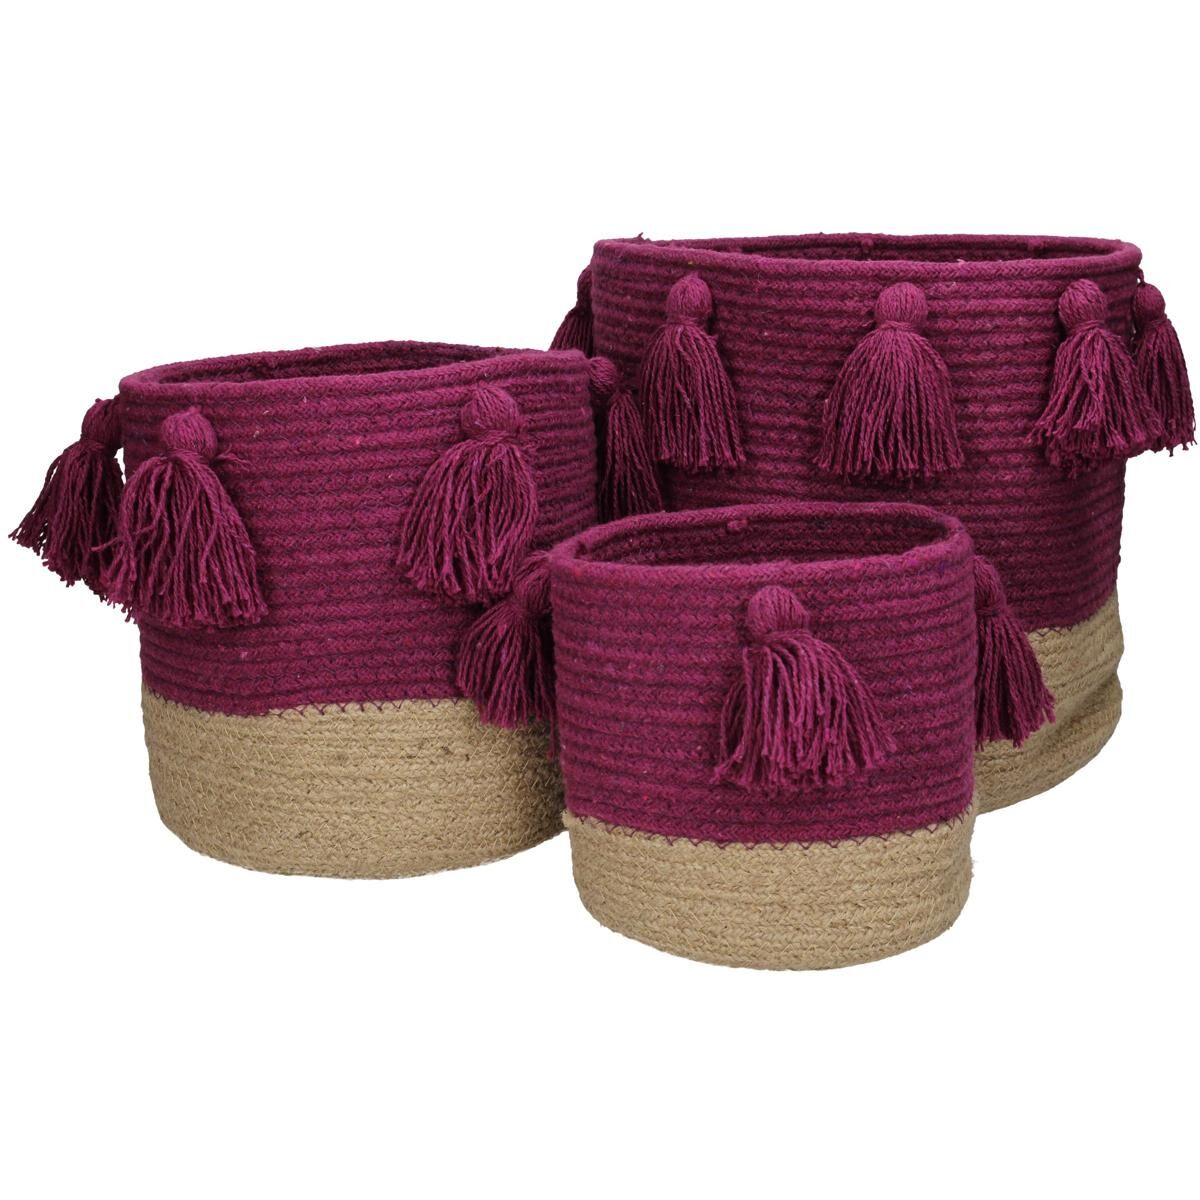 Basket Cotton Purple 25x25x25cm S/3